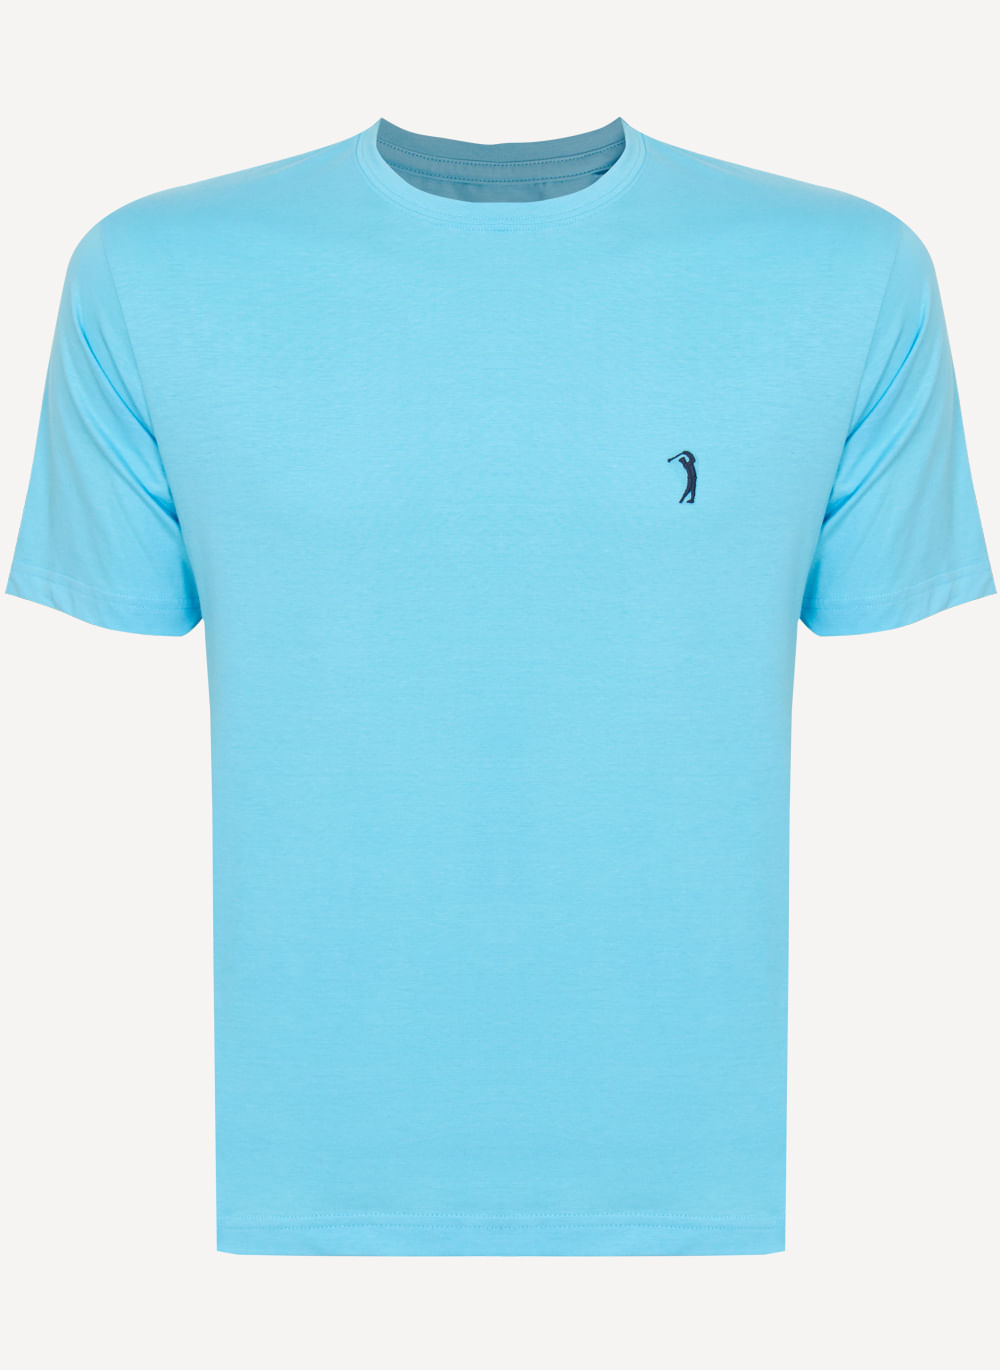 Camiseta-Azul-Claro-Lisa-Aleatory-Azul-Claro-P